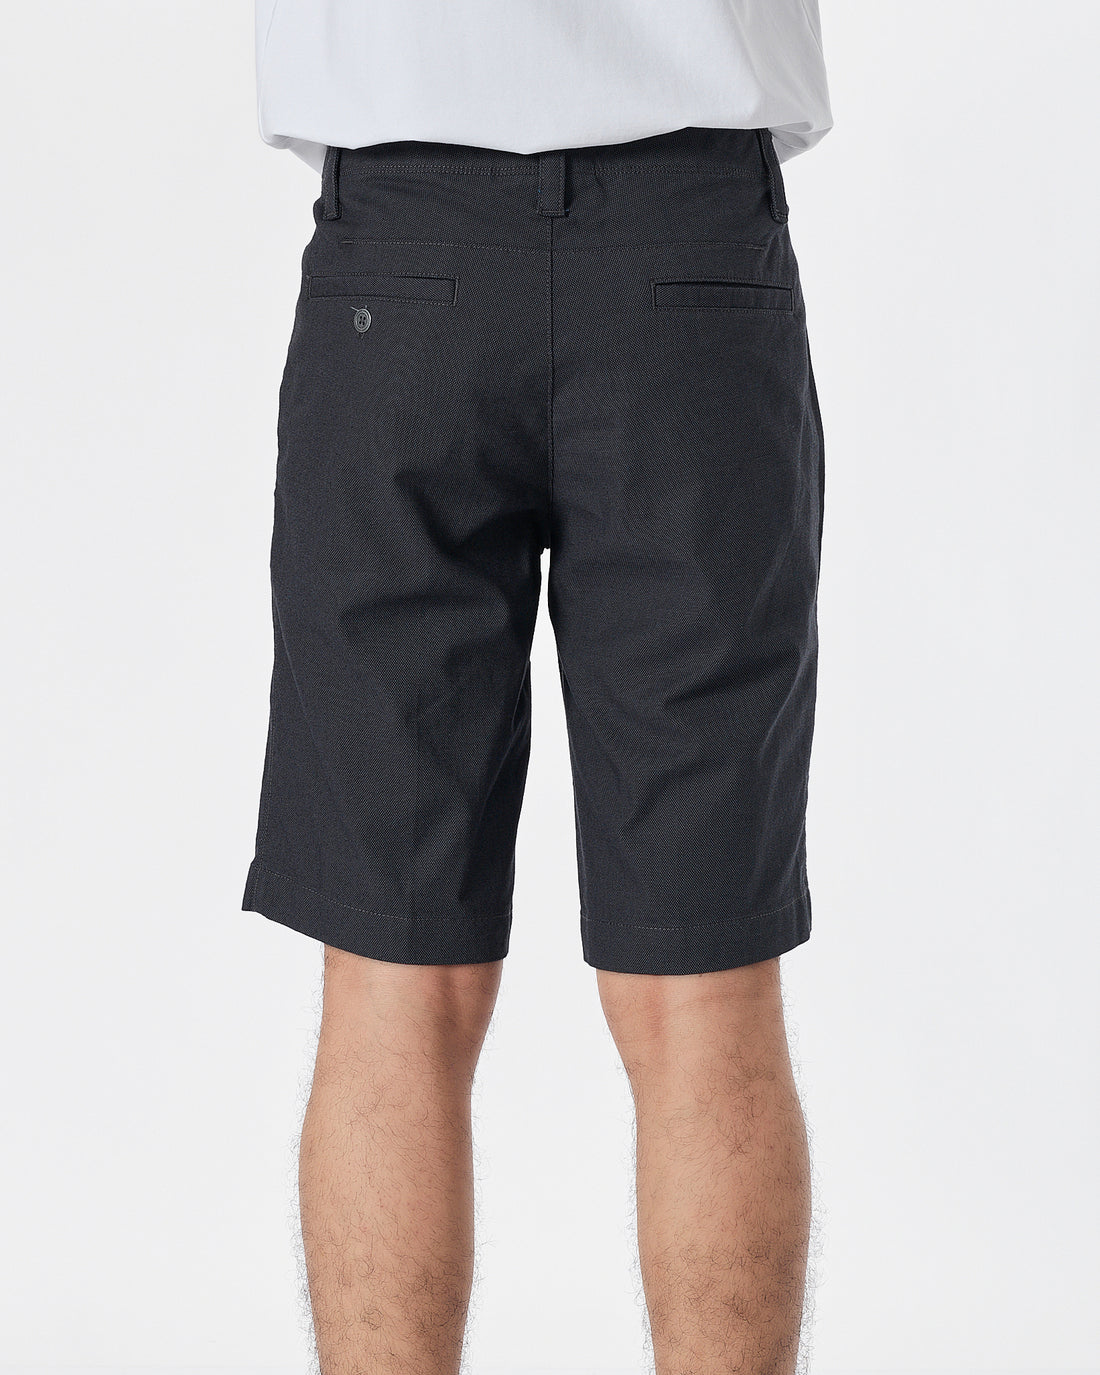 UA Dots Over Printed Men Black Short Pants 18.50